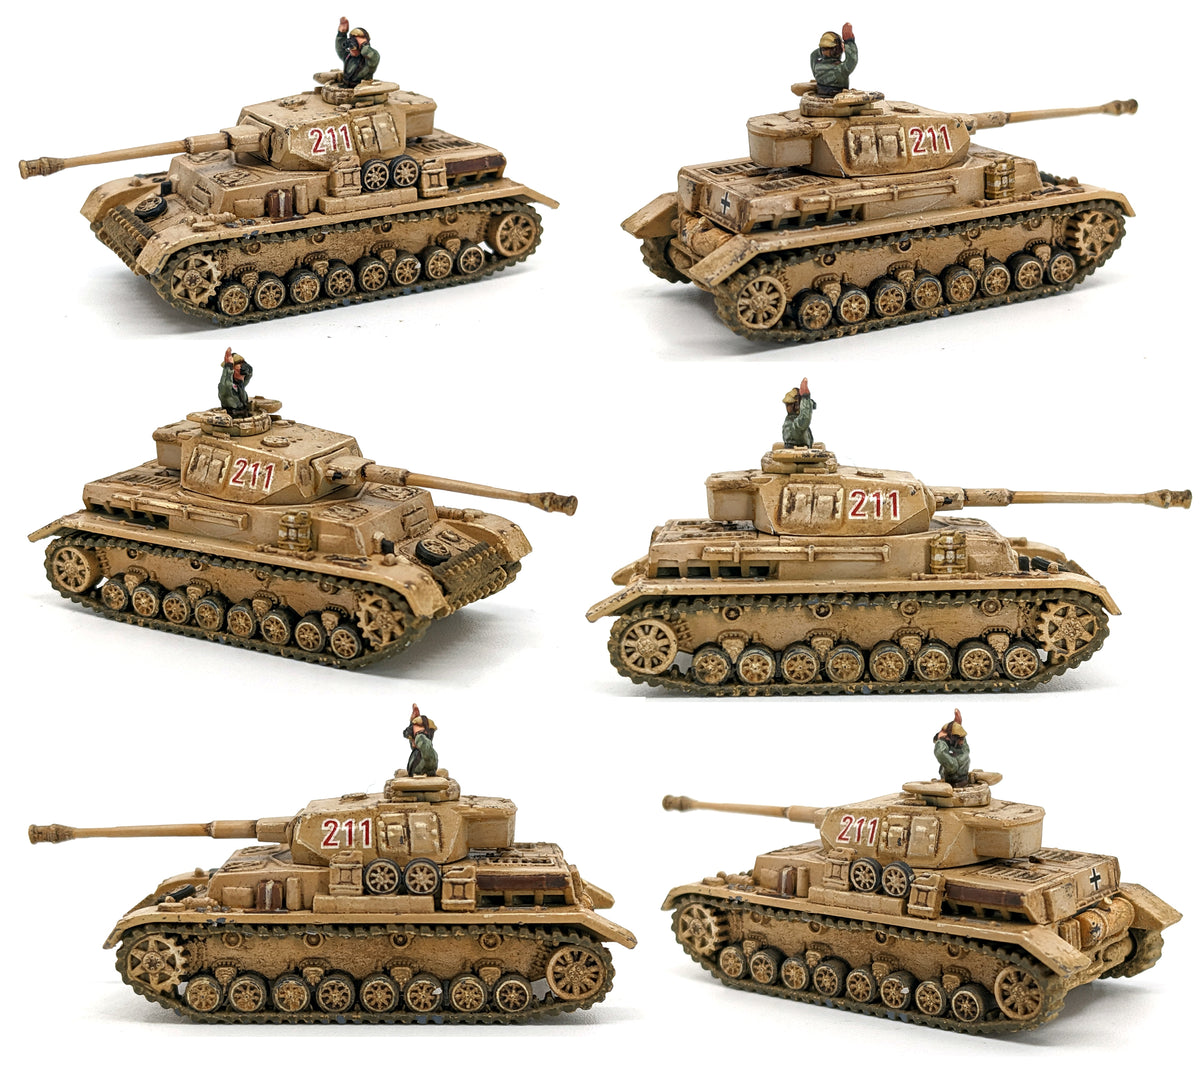 Panzer IVH